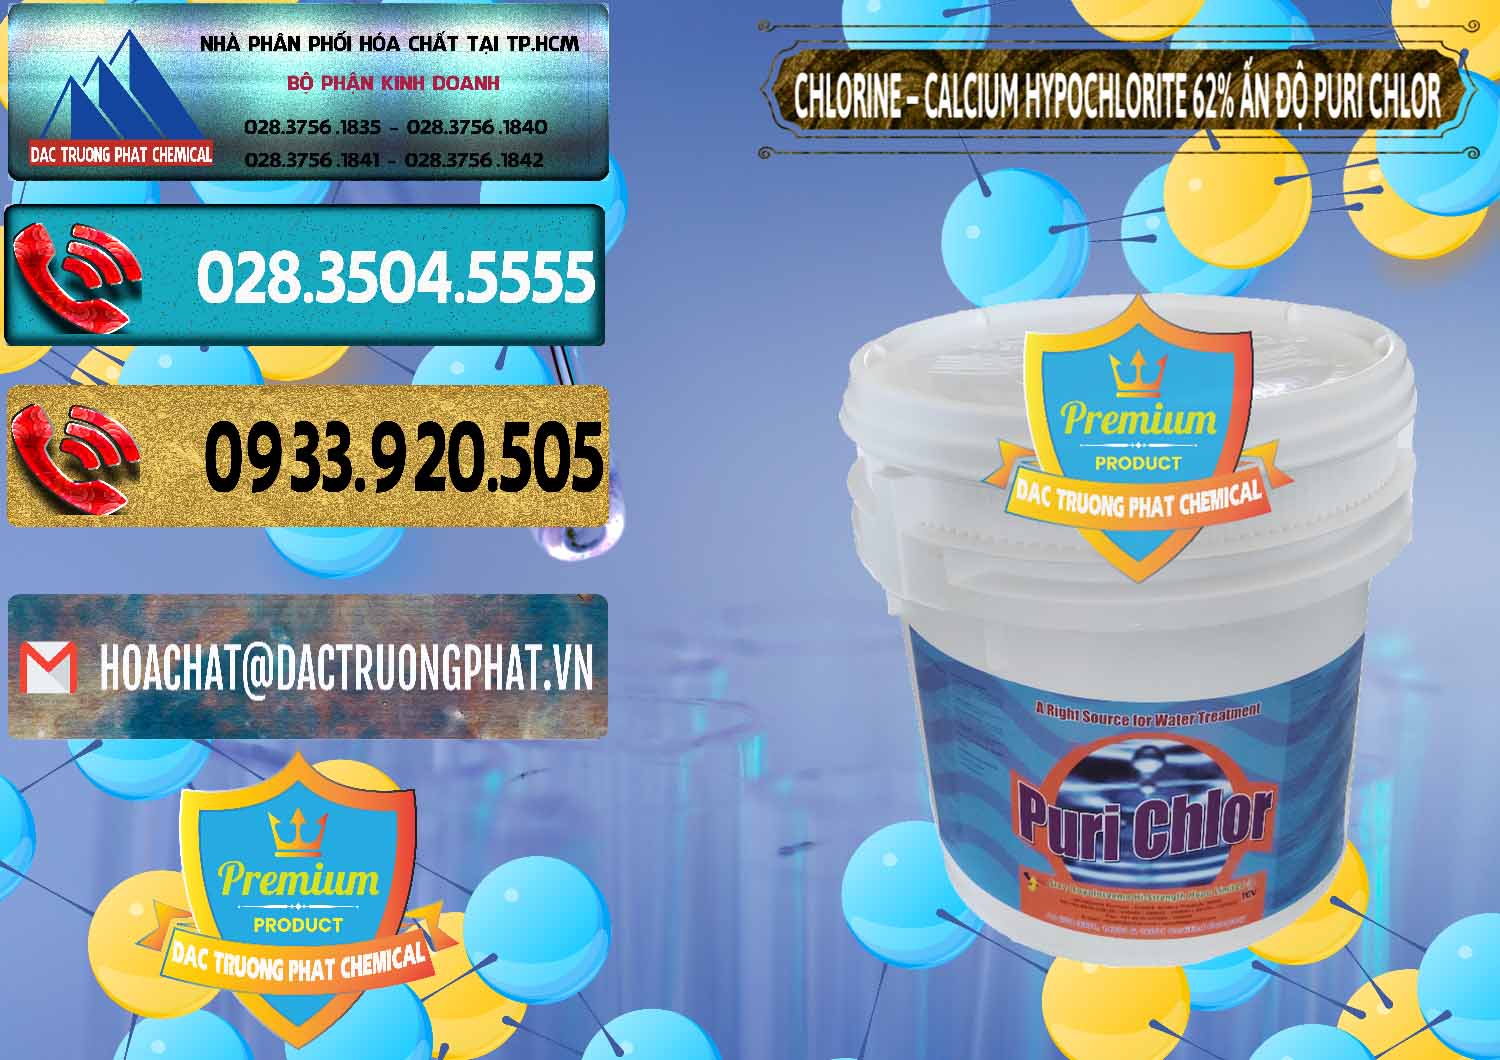 Nơi kinh doanh _ bán Chlorine – Clorin 62% Puri Chlo Ấn Độ India - 0052 - Đơn vị bán và cung cấp hóa chất tại TP.HCM - hoachatdetnhuom.com